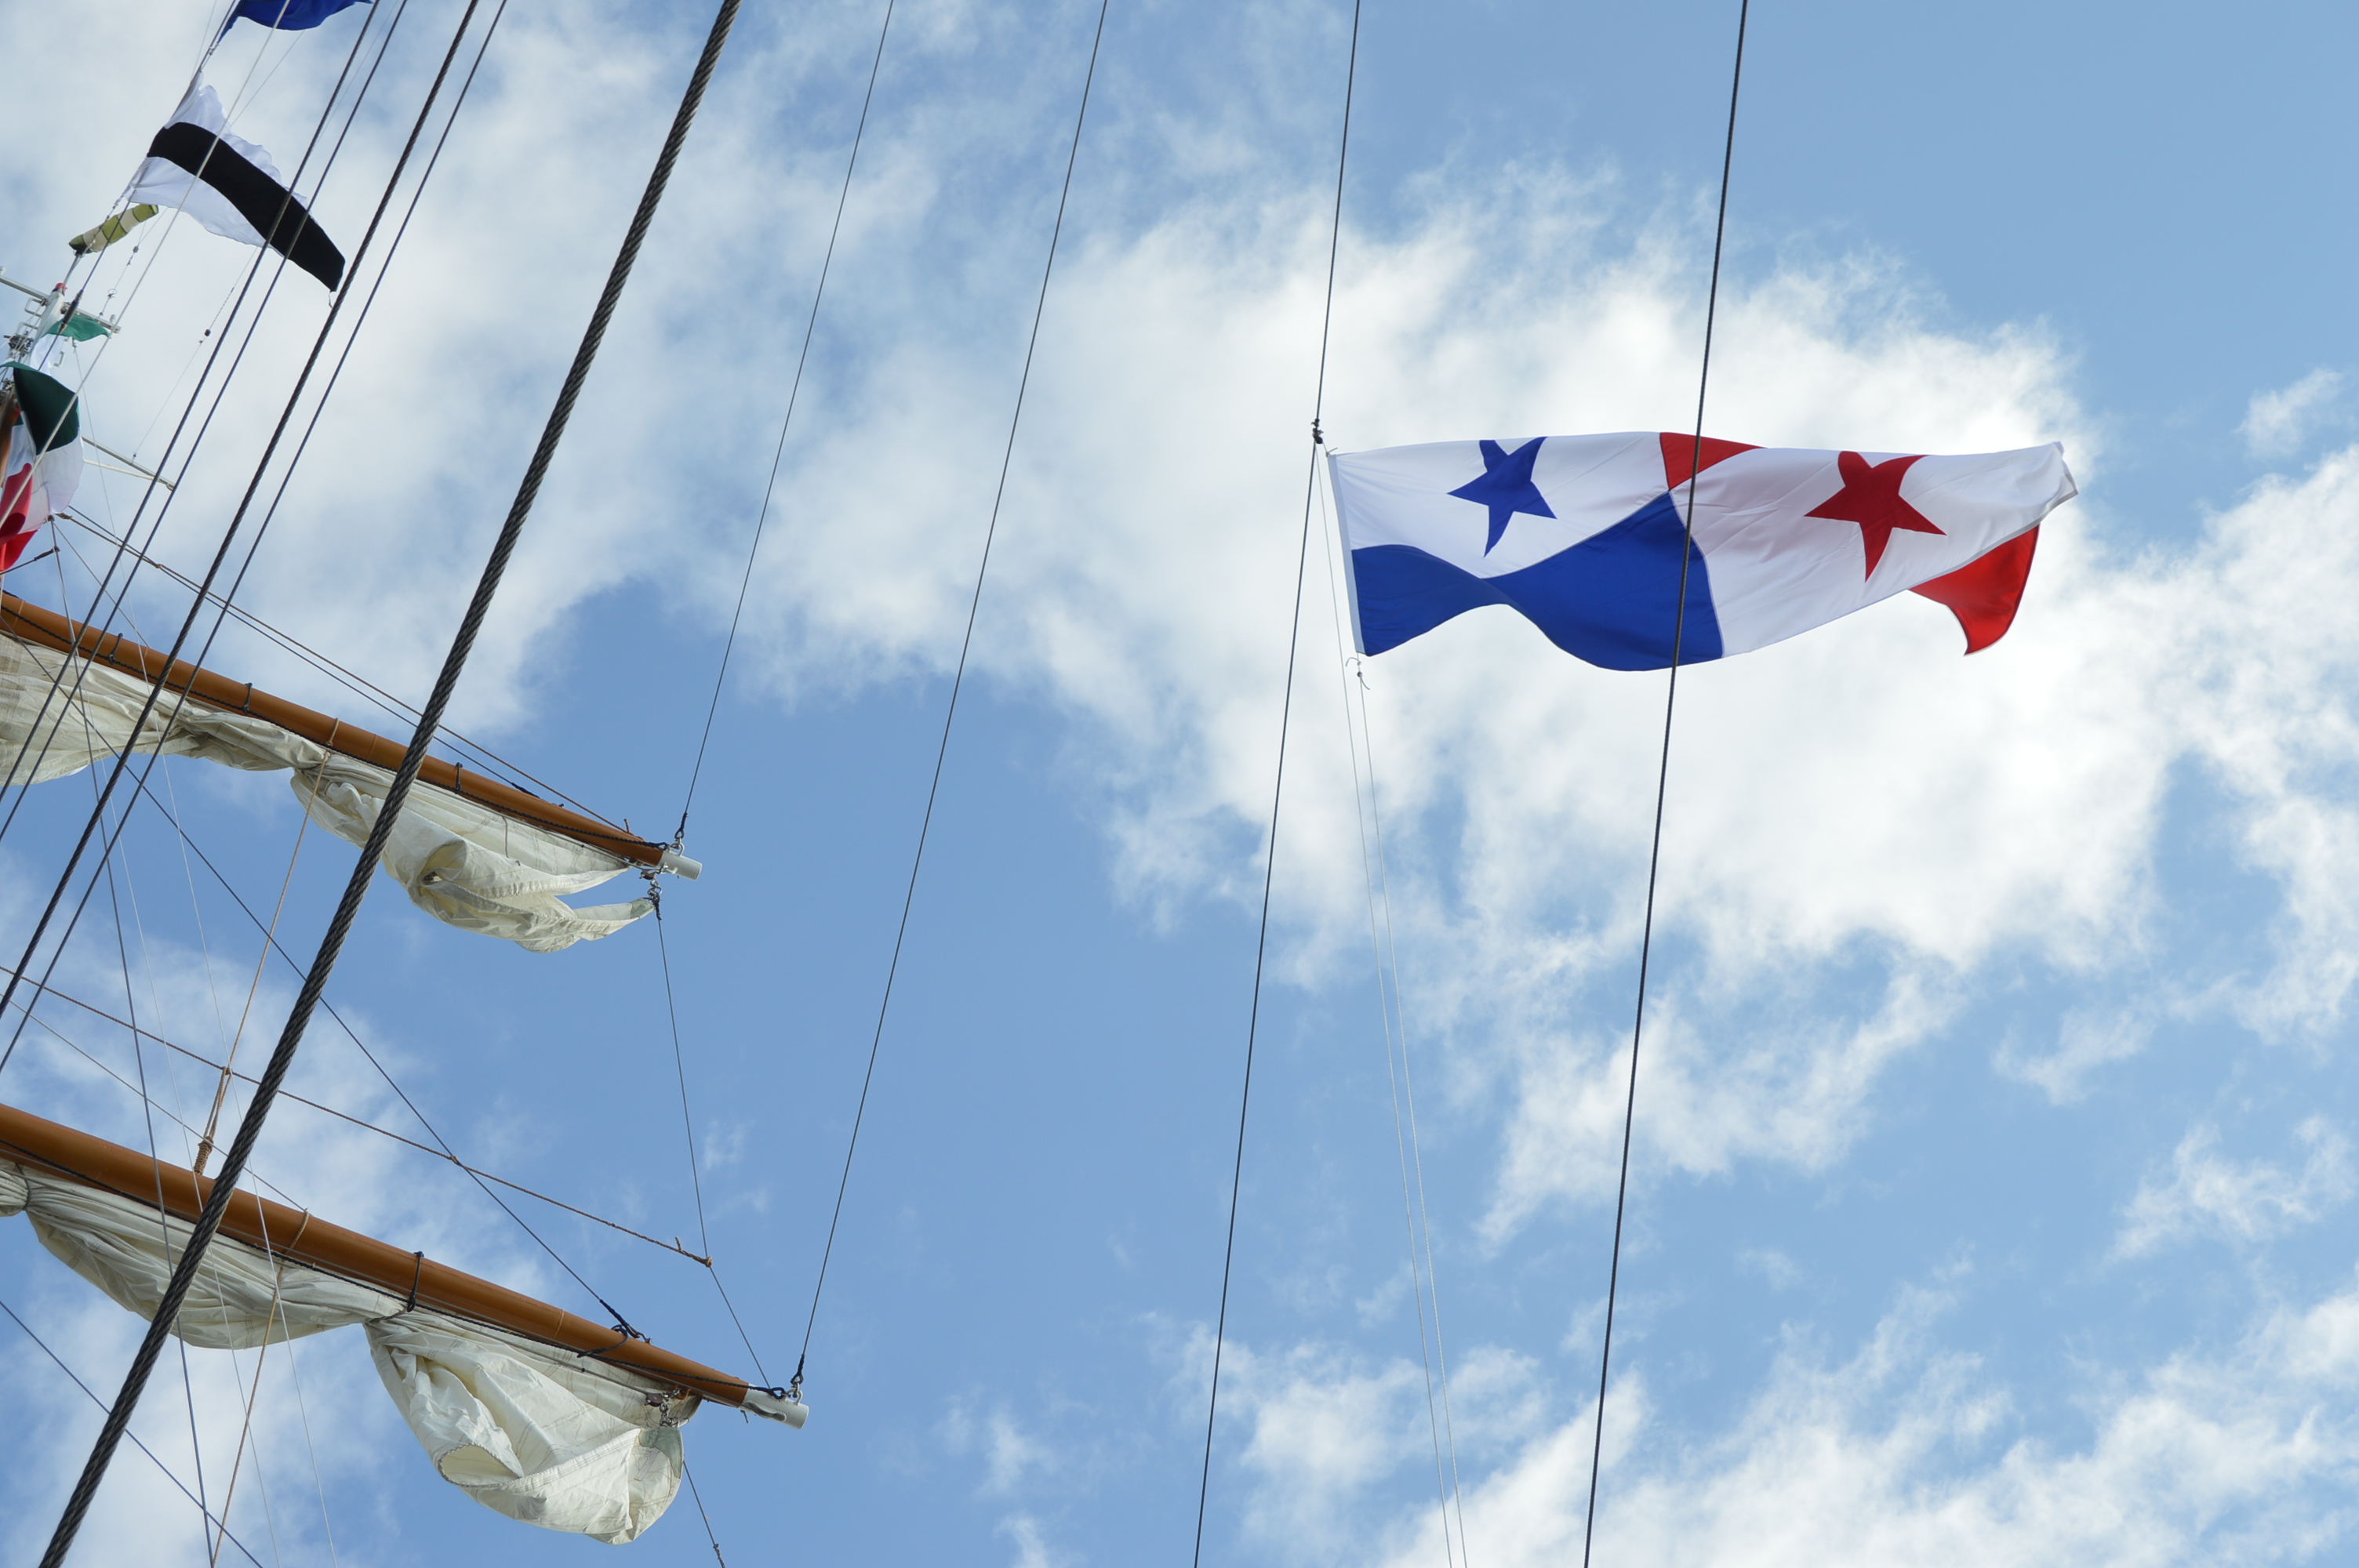 Arribo del #BECuauhtémoc a Panama, en Crucero #CentenarioDeLaConstitución